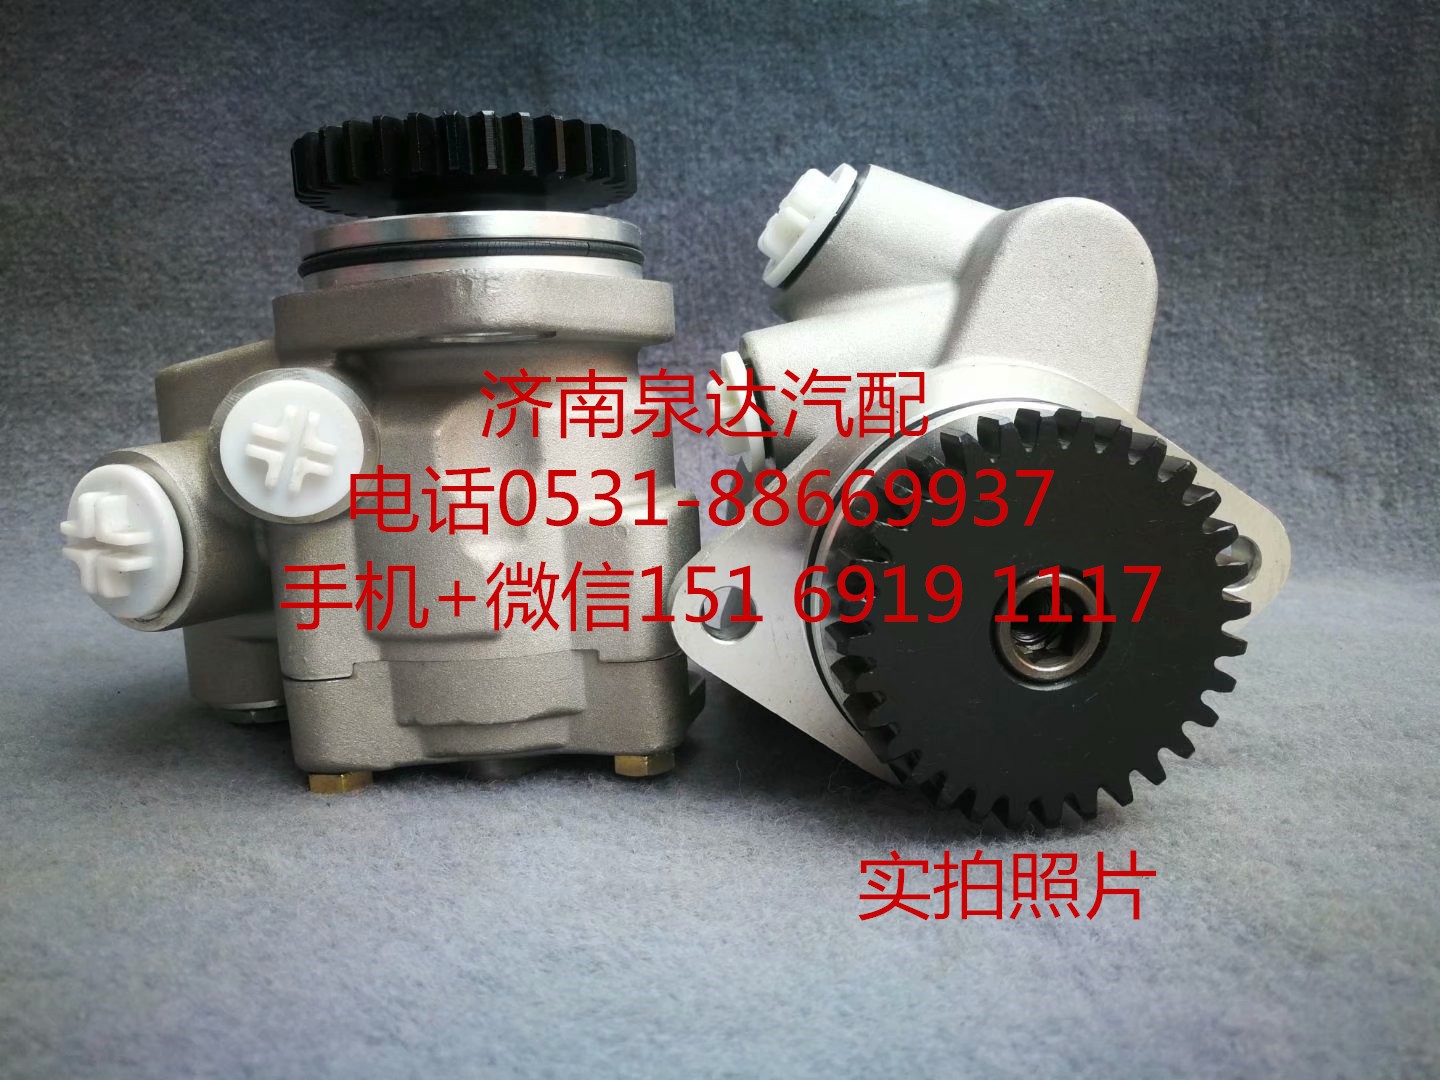 LG9704472030,转向助力泵,济南泉达汽配有限公司